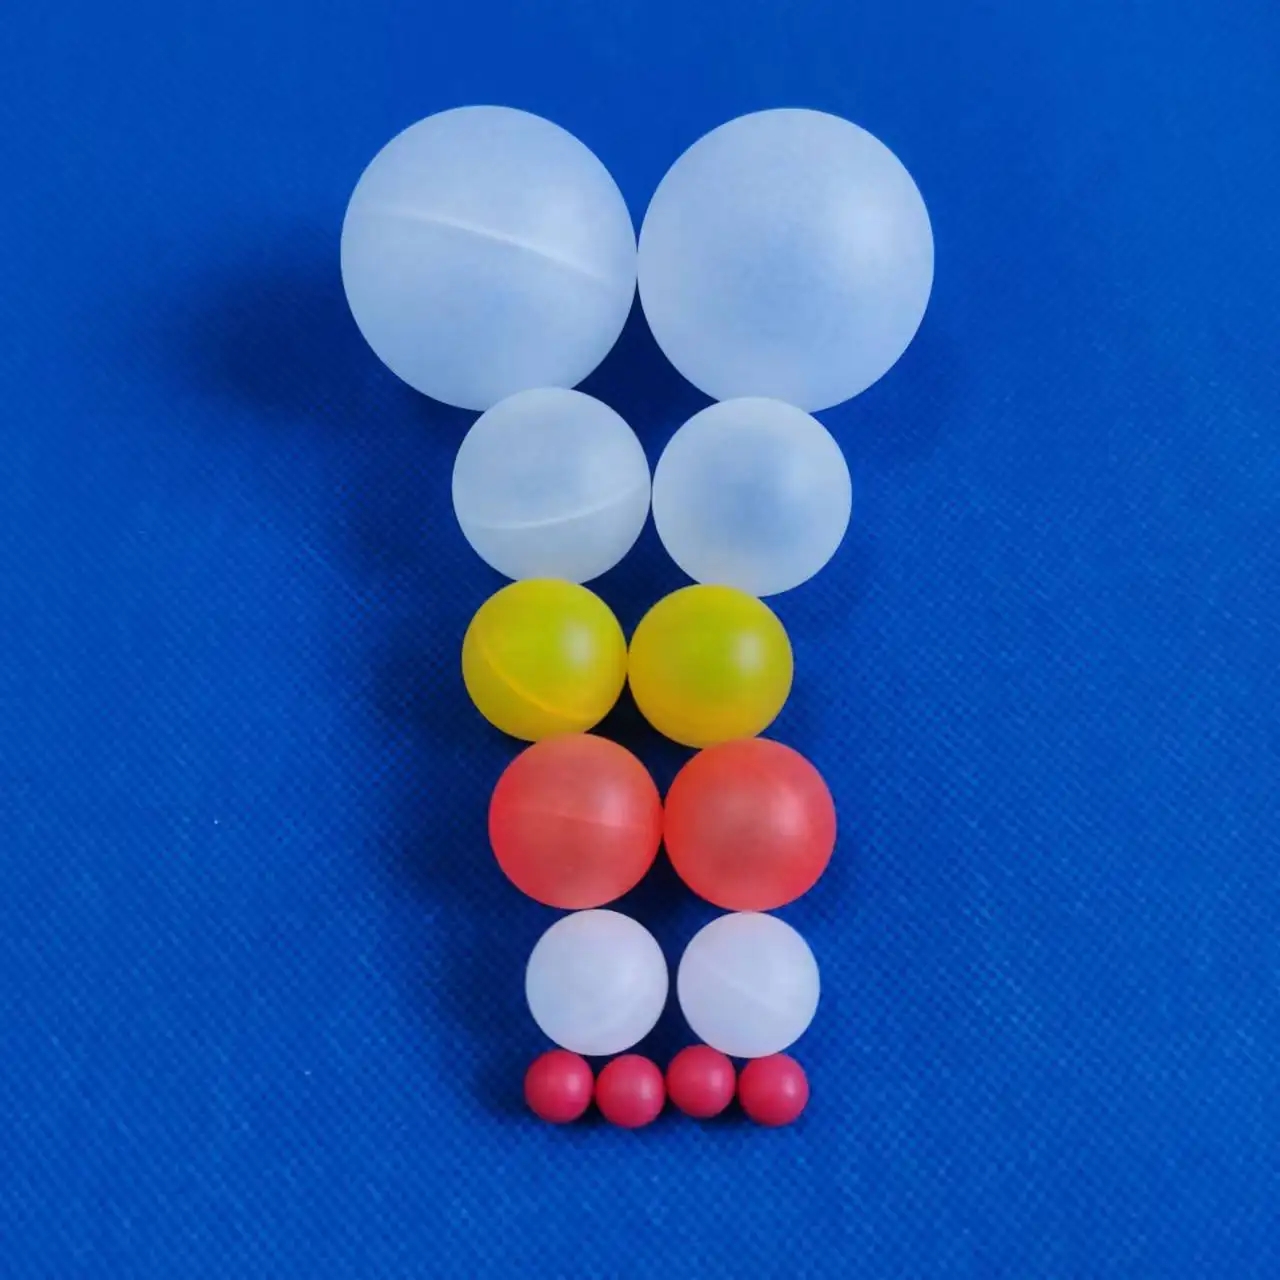 空心浮球空心浮球 塑料空心浮球 洗条塔浮球 pp空心浮球填料 发泡球污水处理